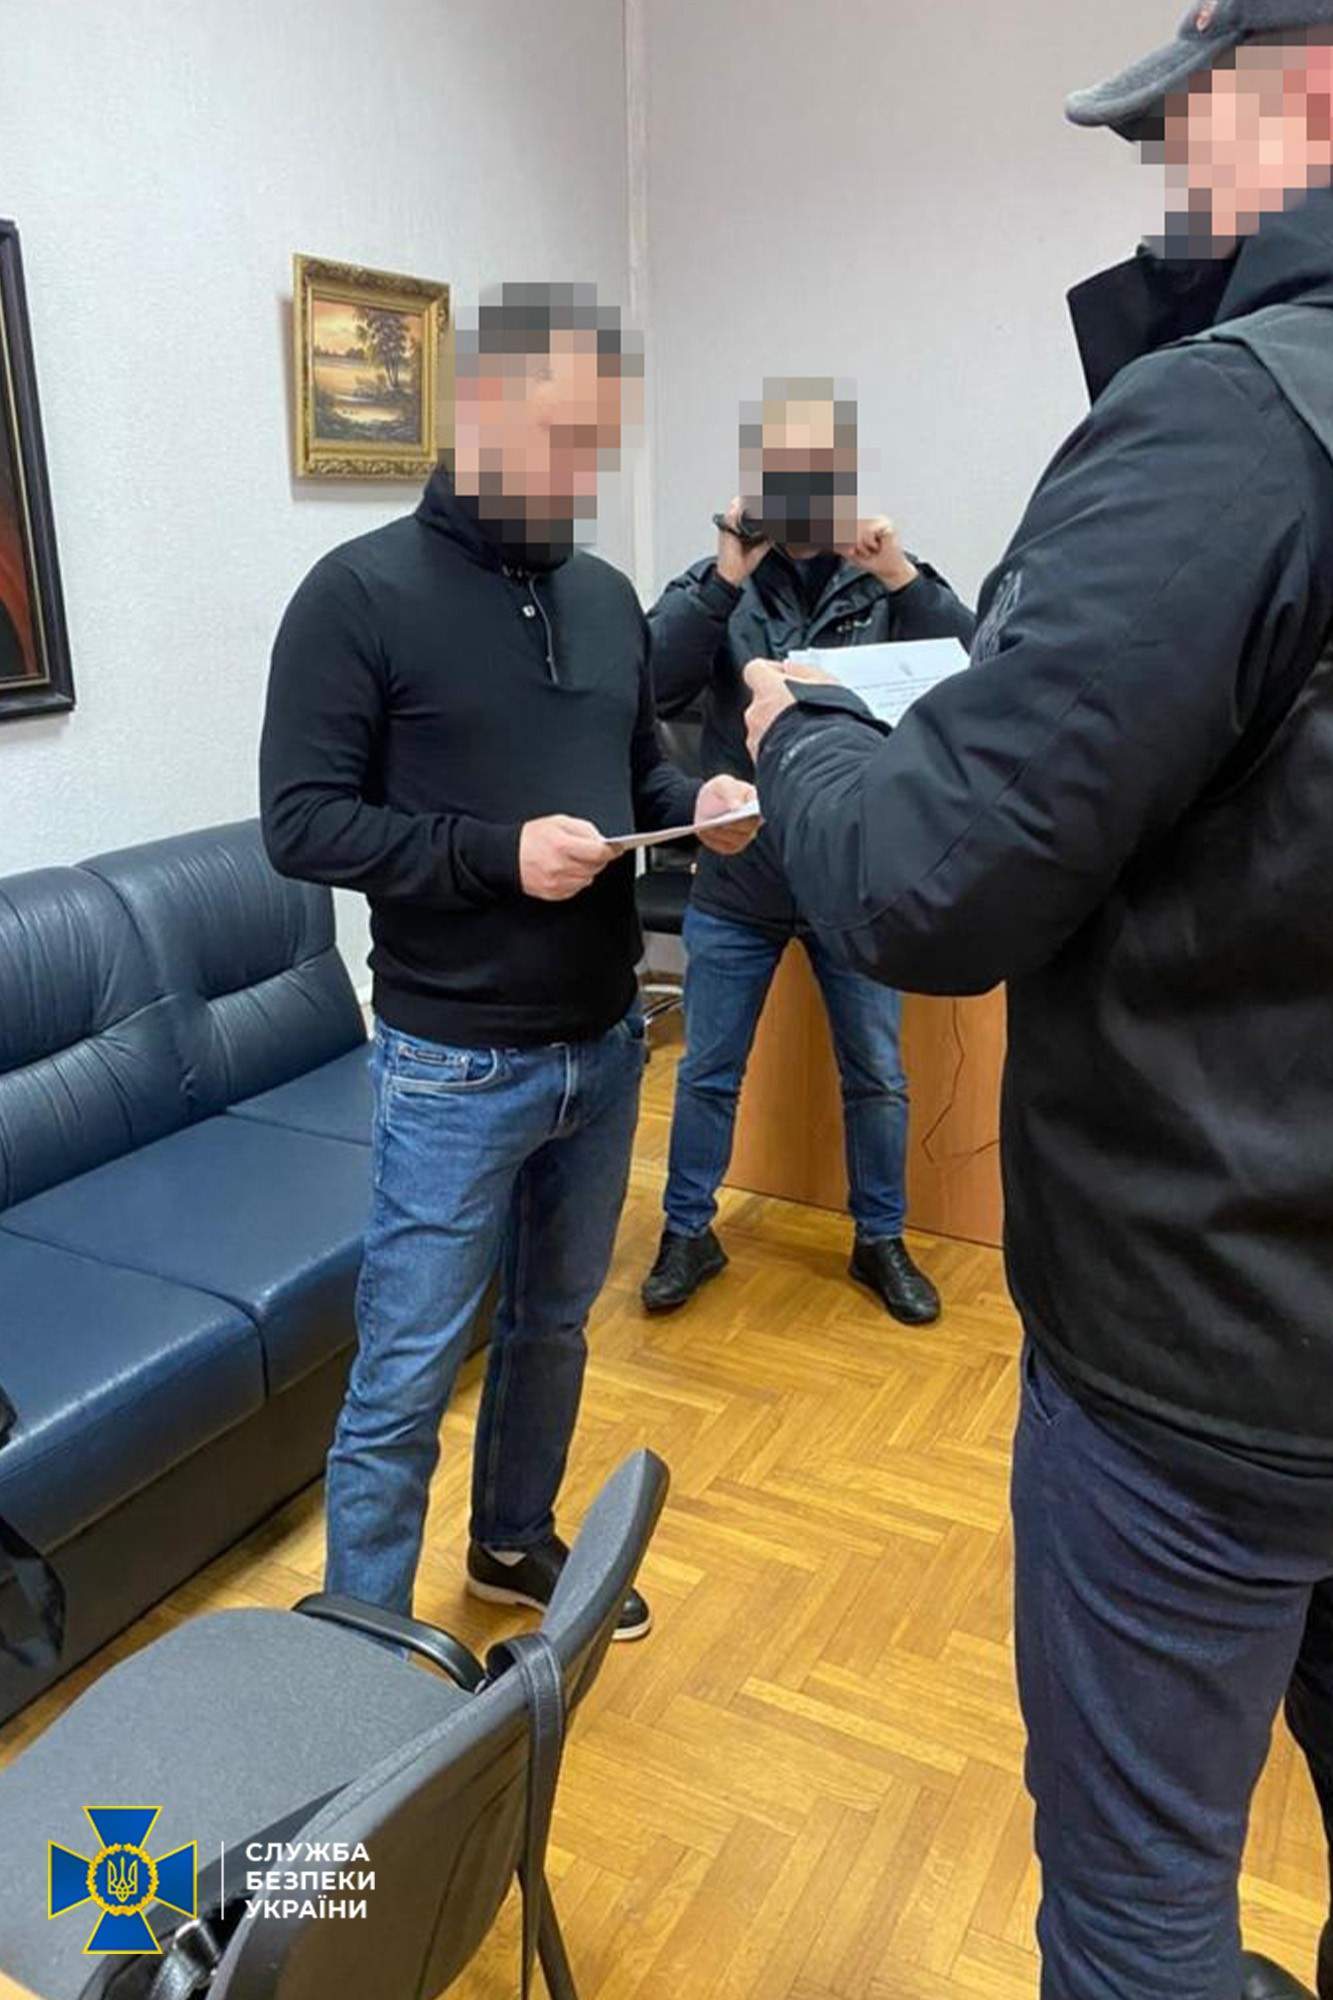 Головного митника на Івано-Франківщині спіймали на корупційній схемі